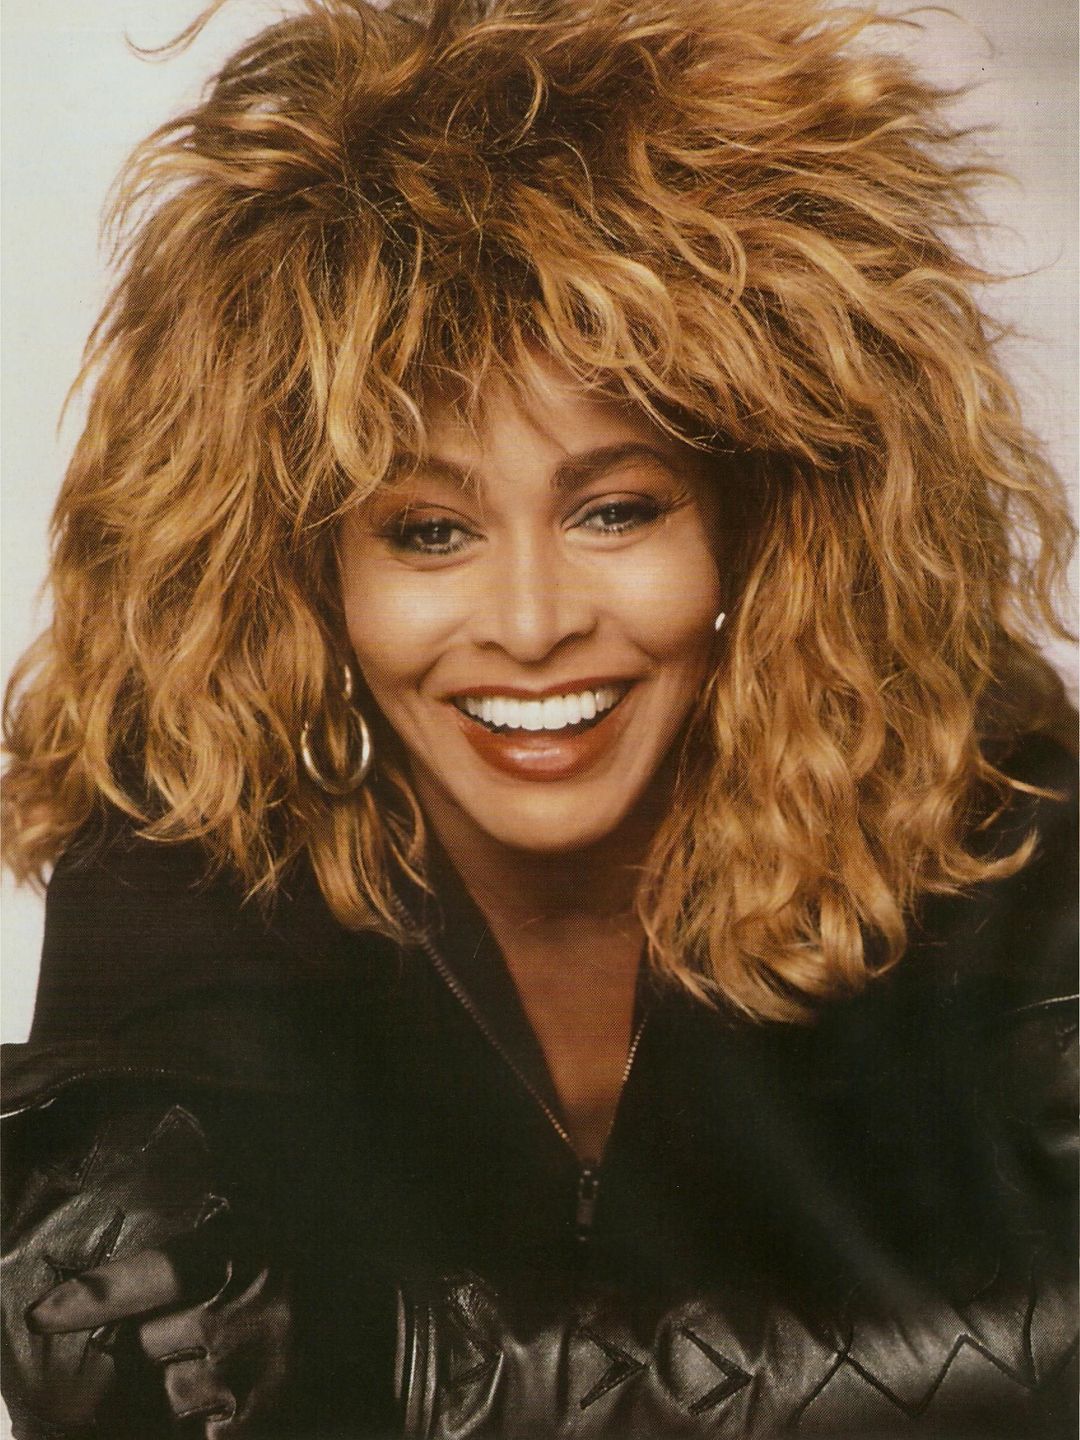 Tina Turner young pics